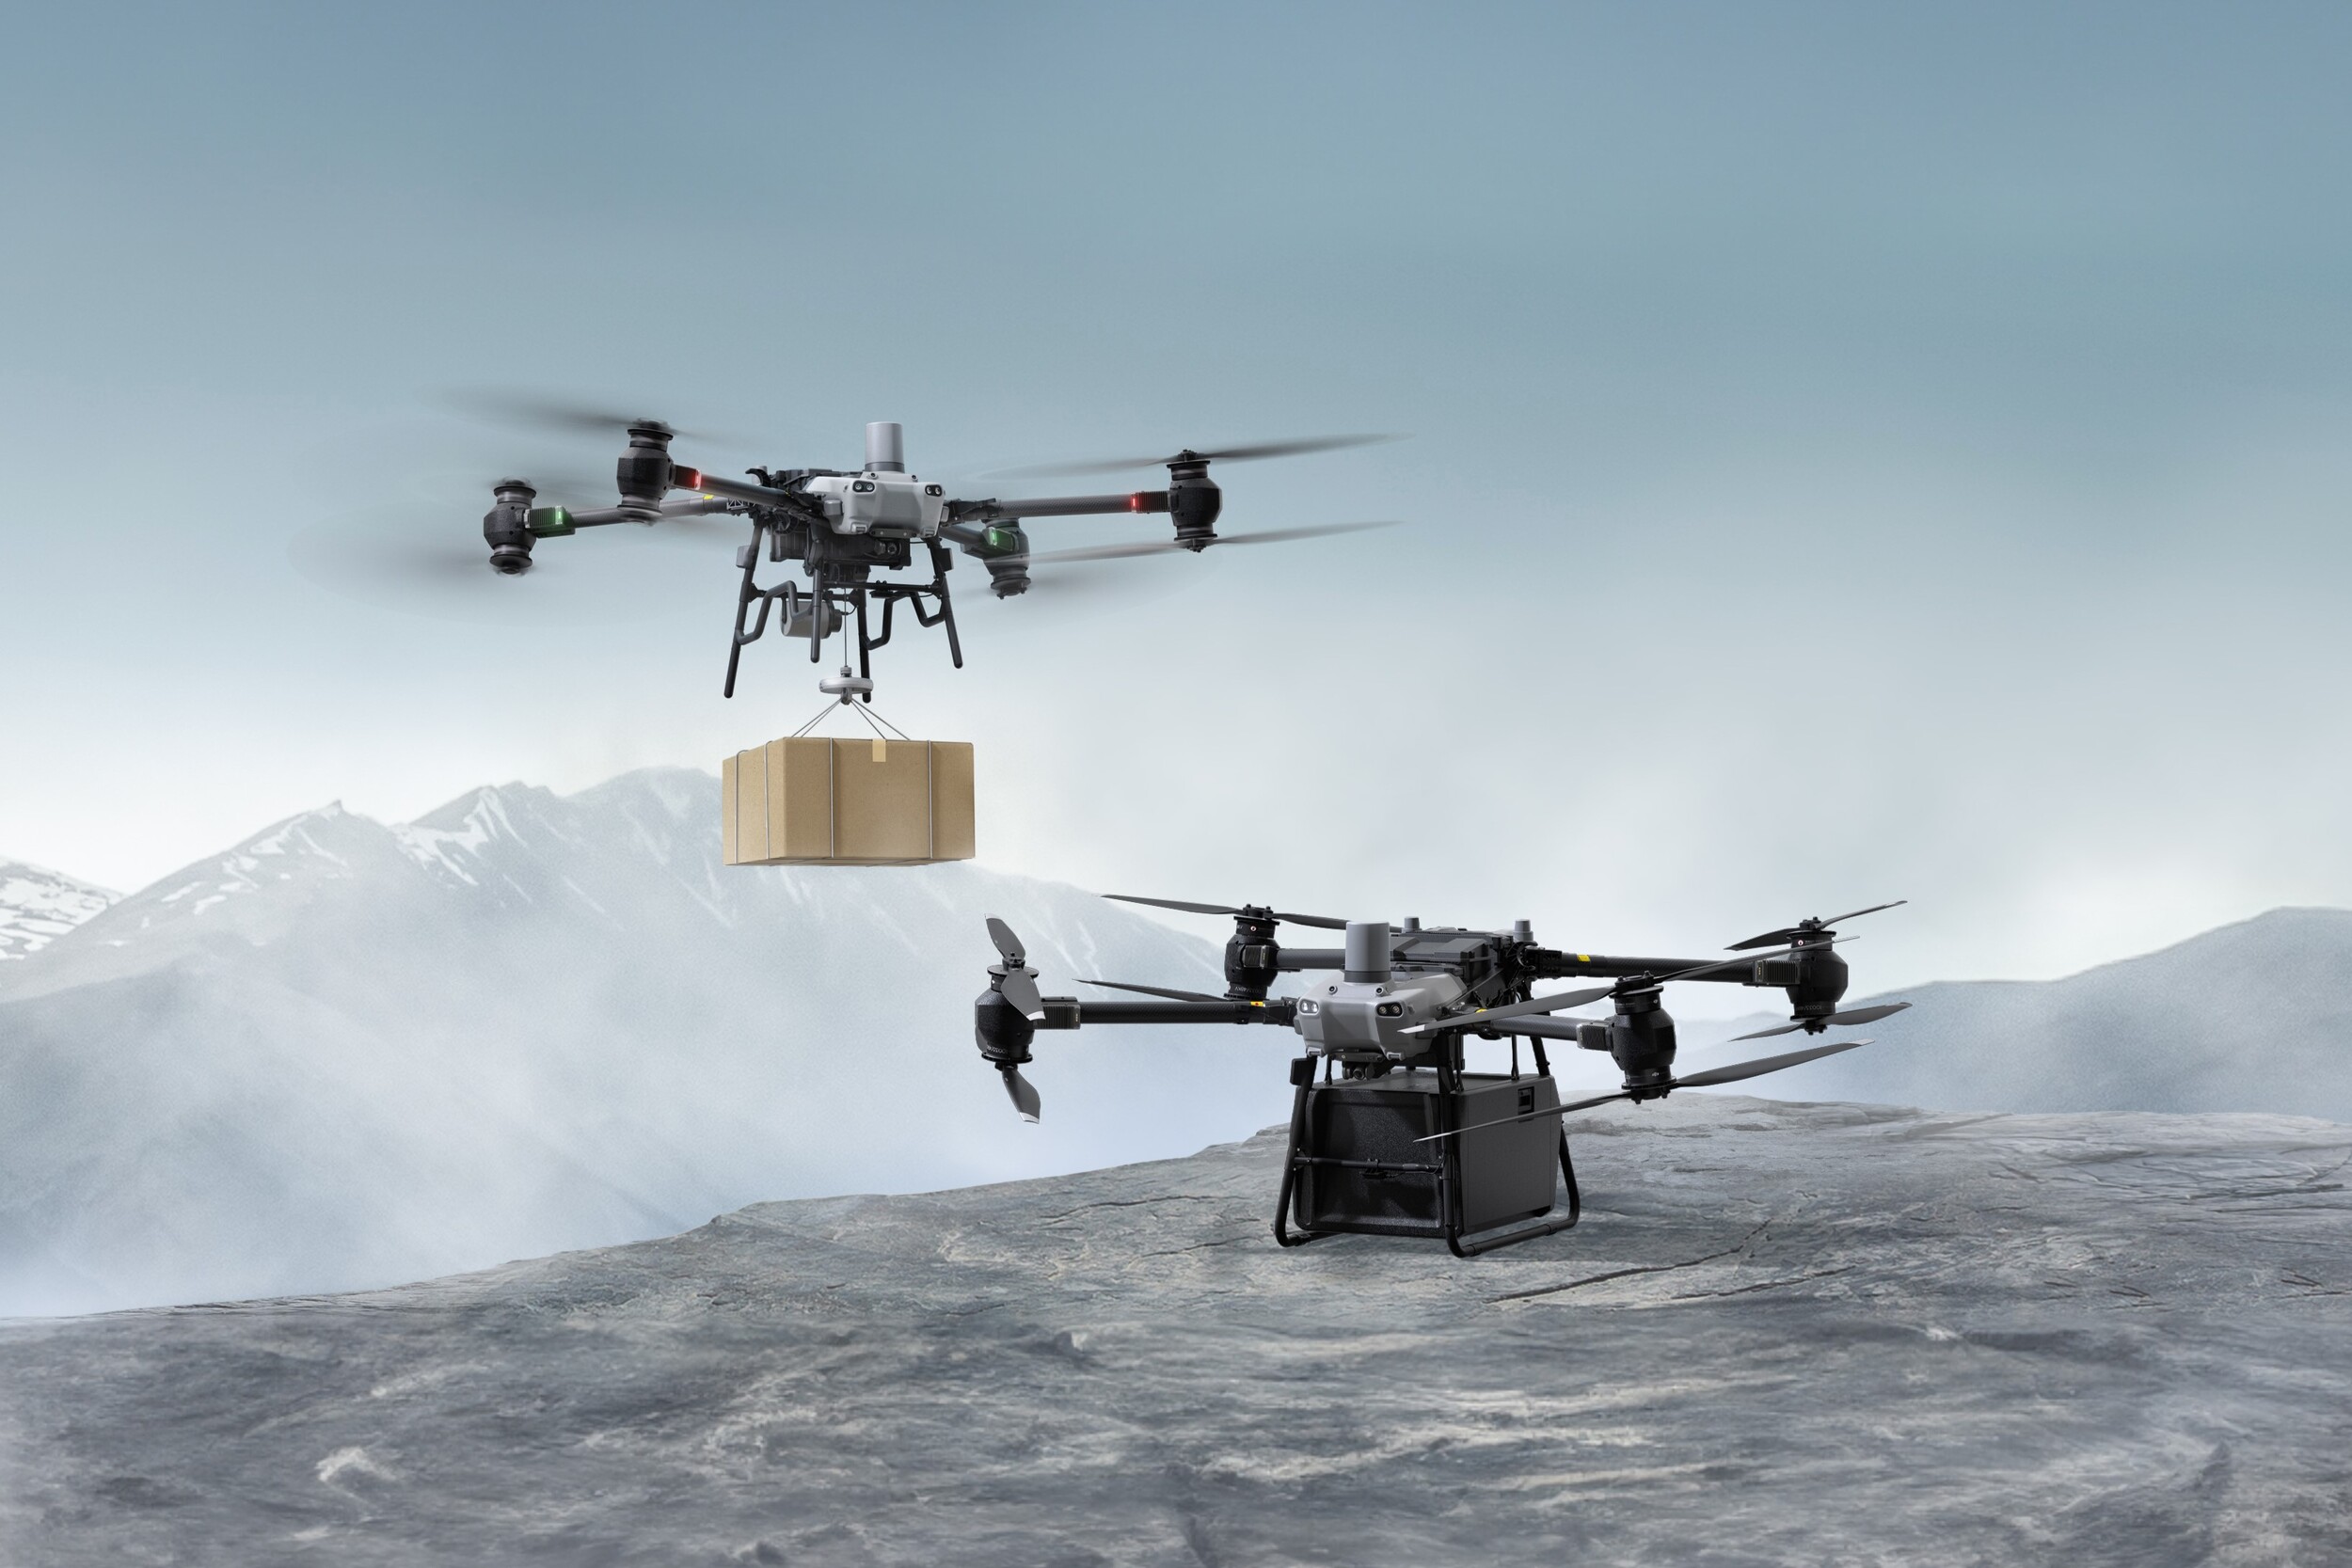 4 Hélices en Fibre de Carbone pour drone DJI Mini 3 Pro - Maison Du Drone